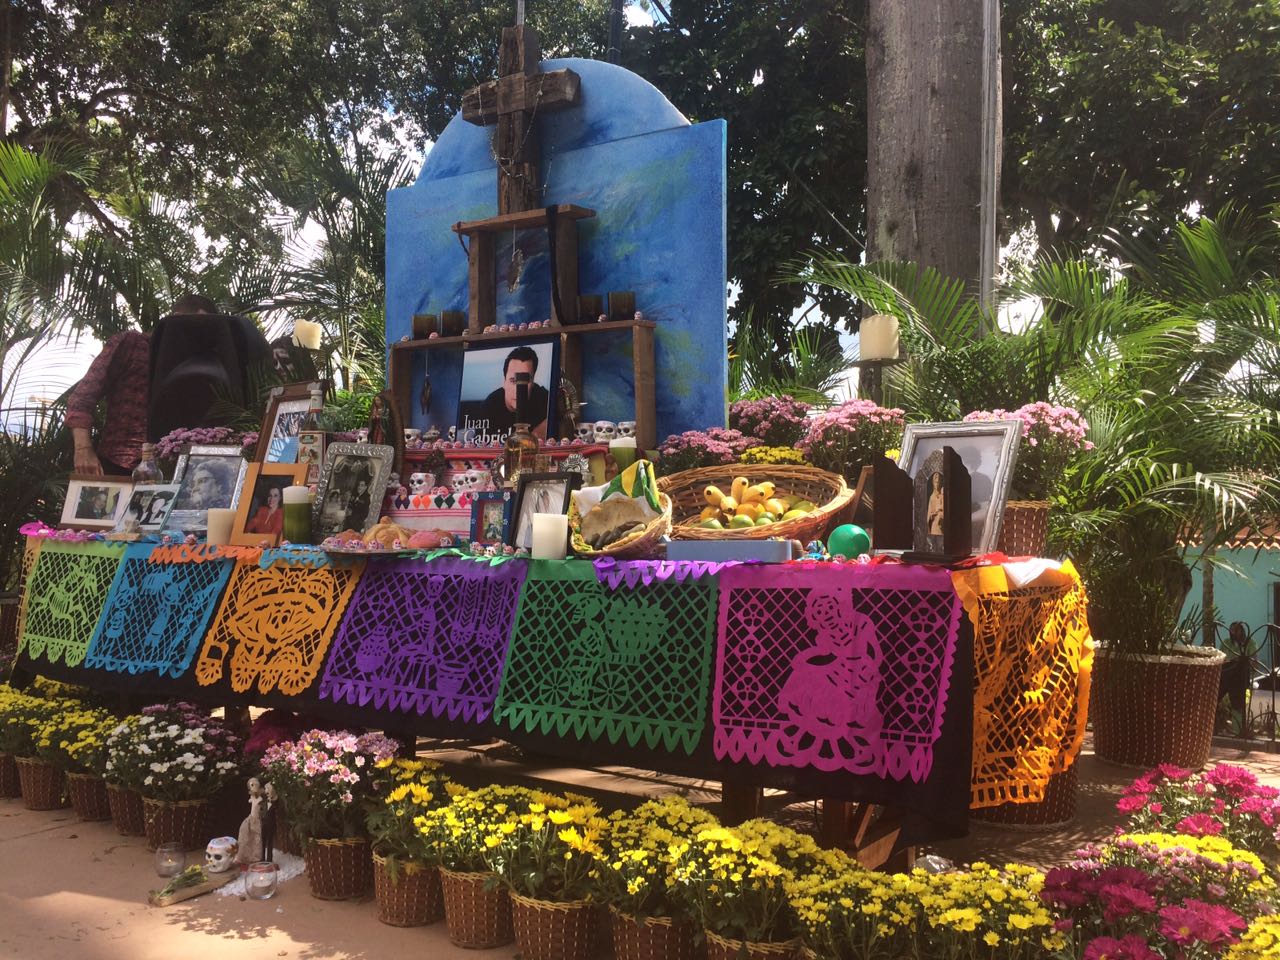 El Hatillo celebró el Día de Muertos al estilo mexicano